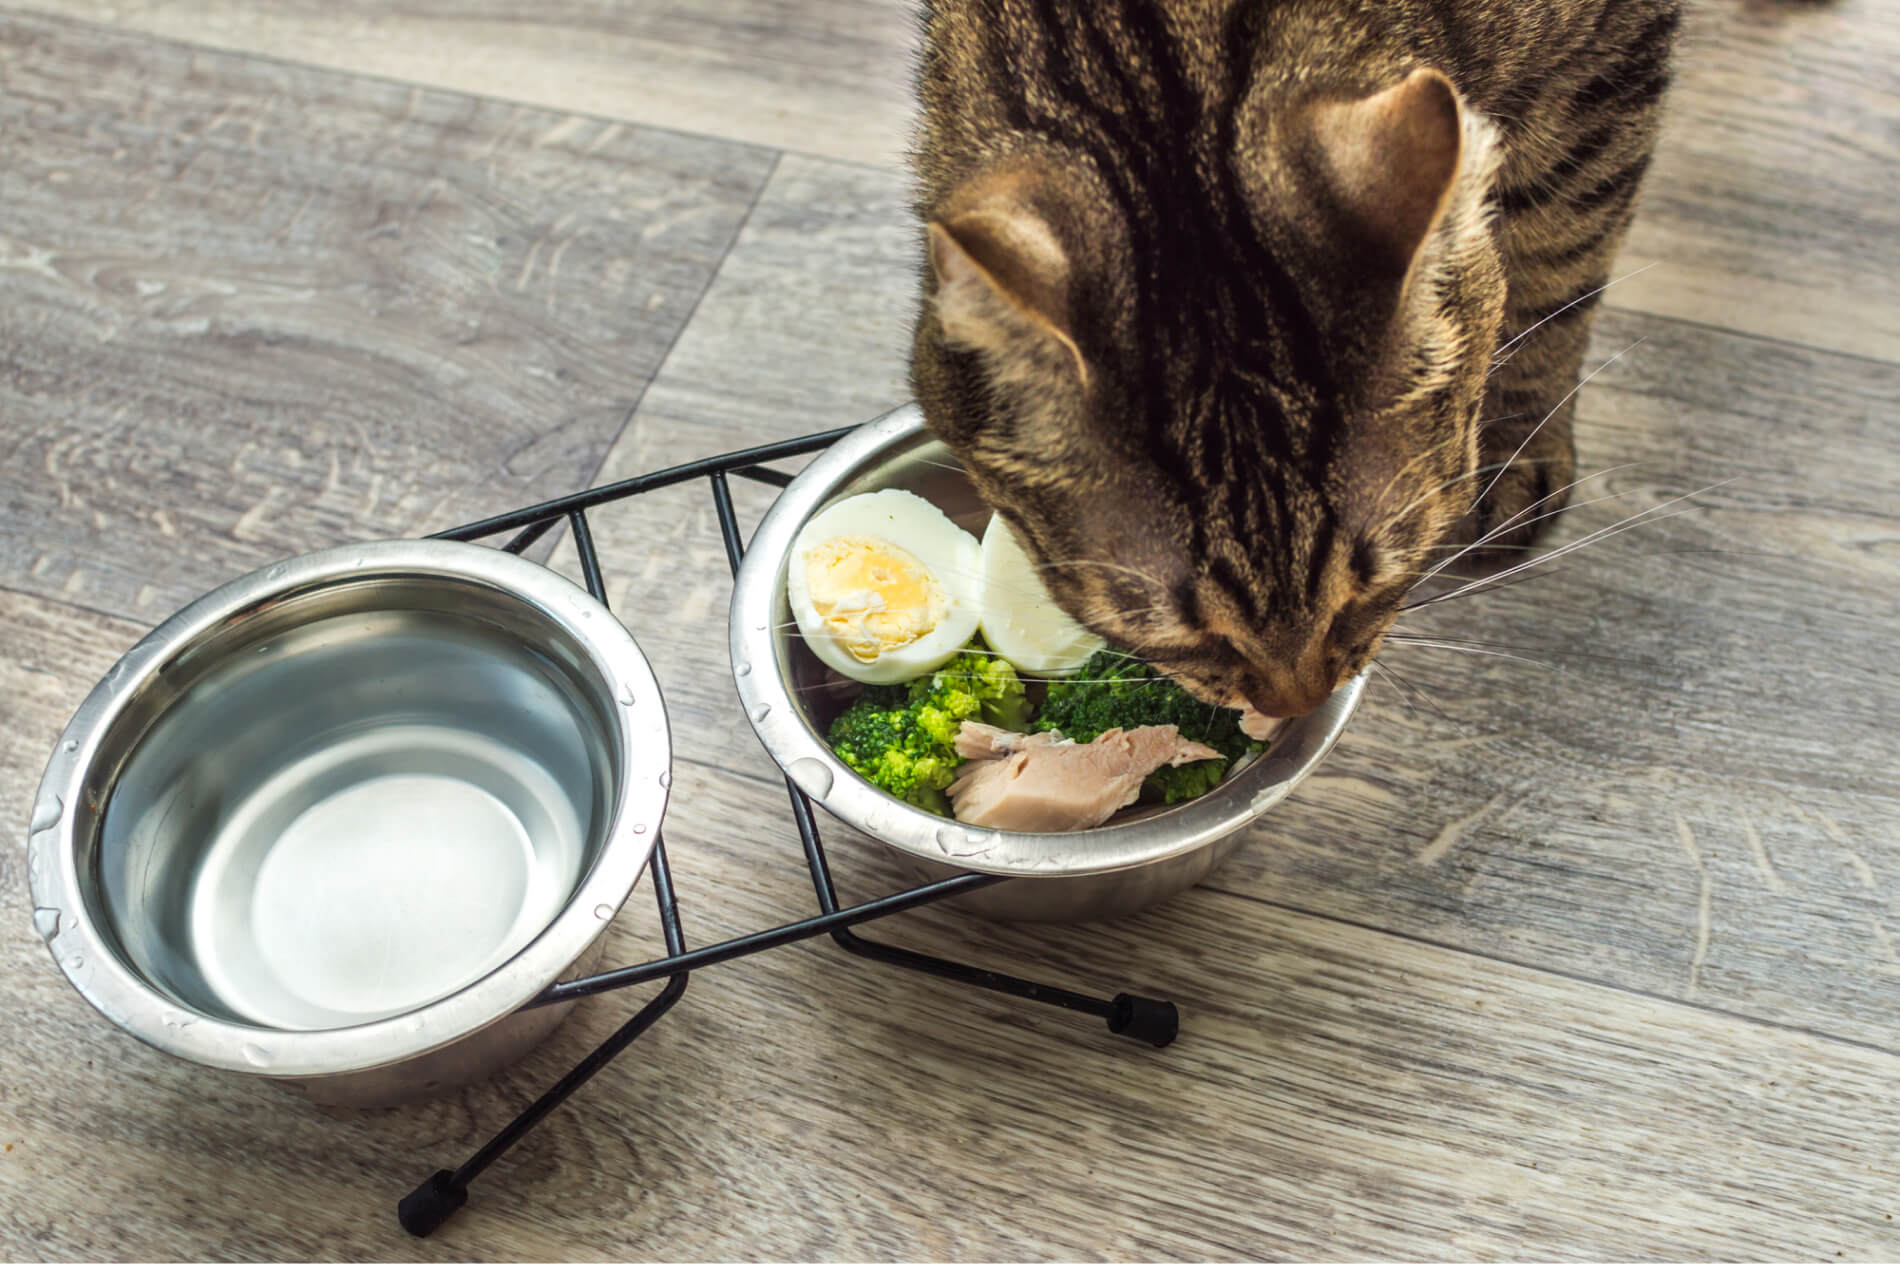 Dürfen Katzen Eier essen?